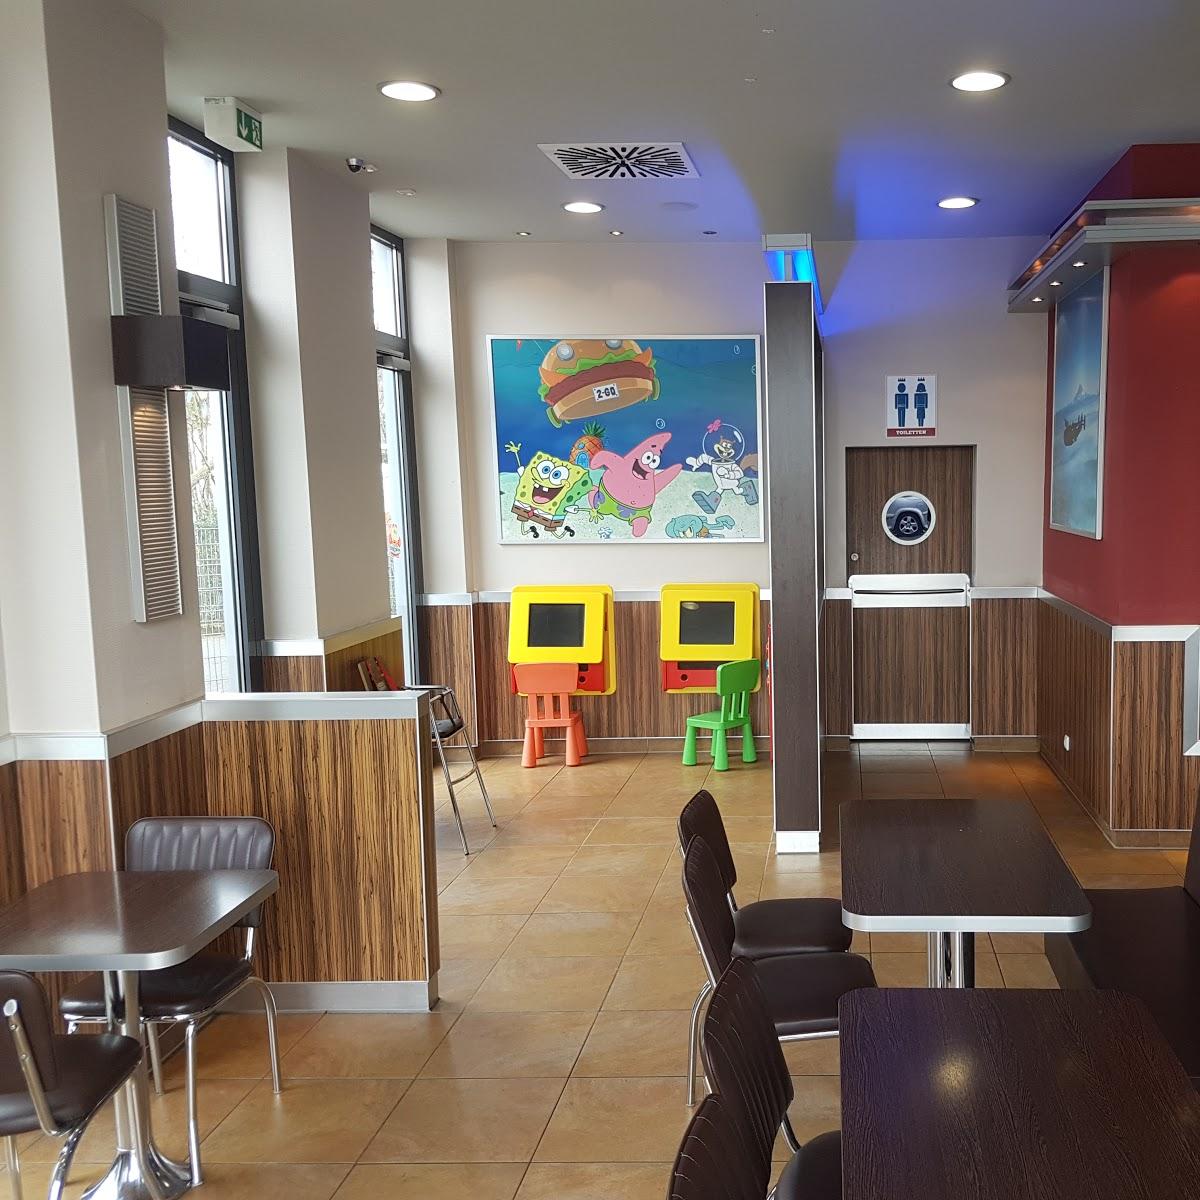 Restaurant "Burger King" in Büdingen